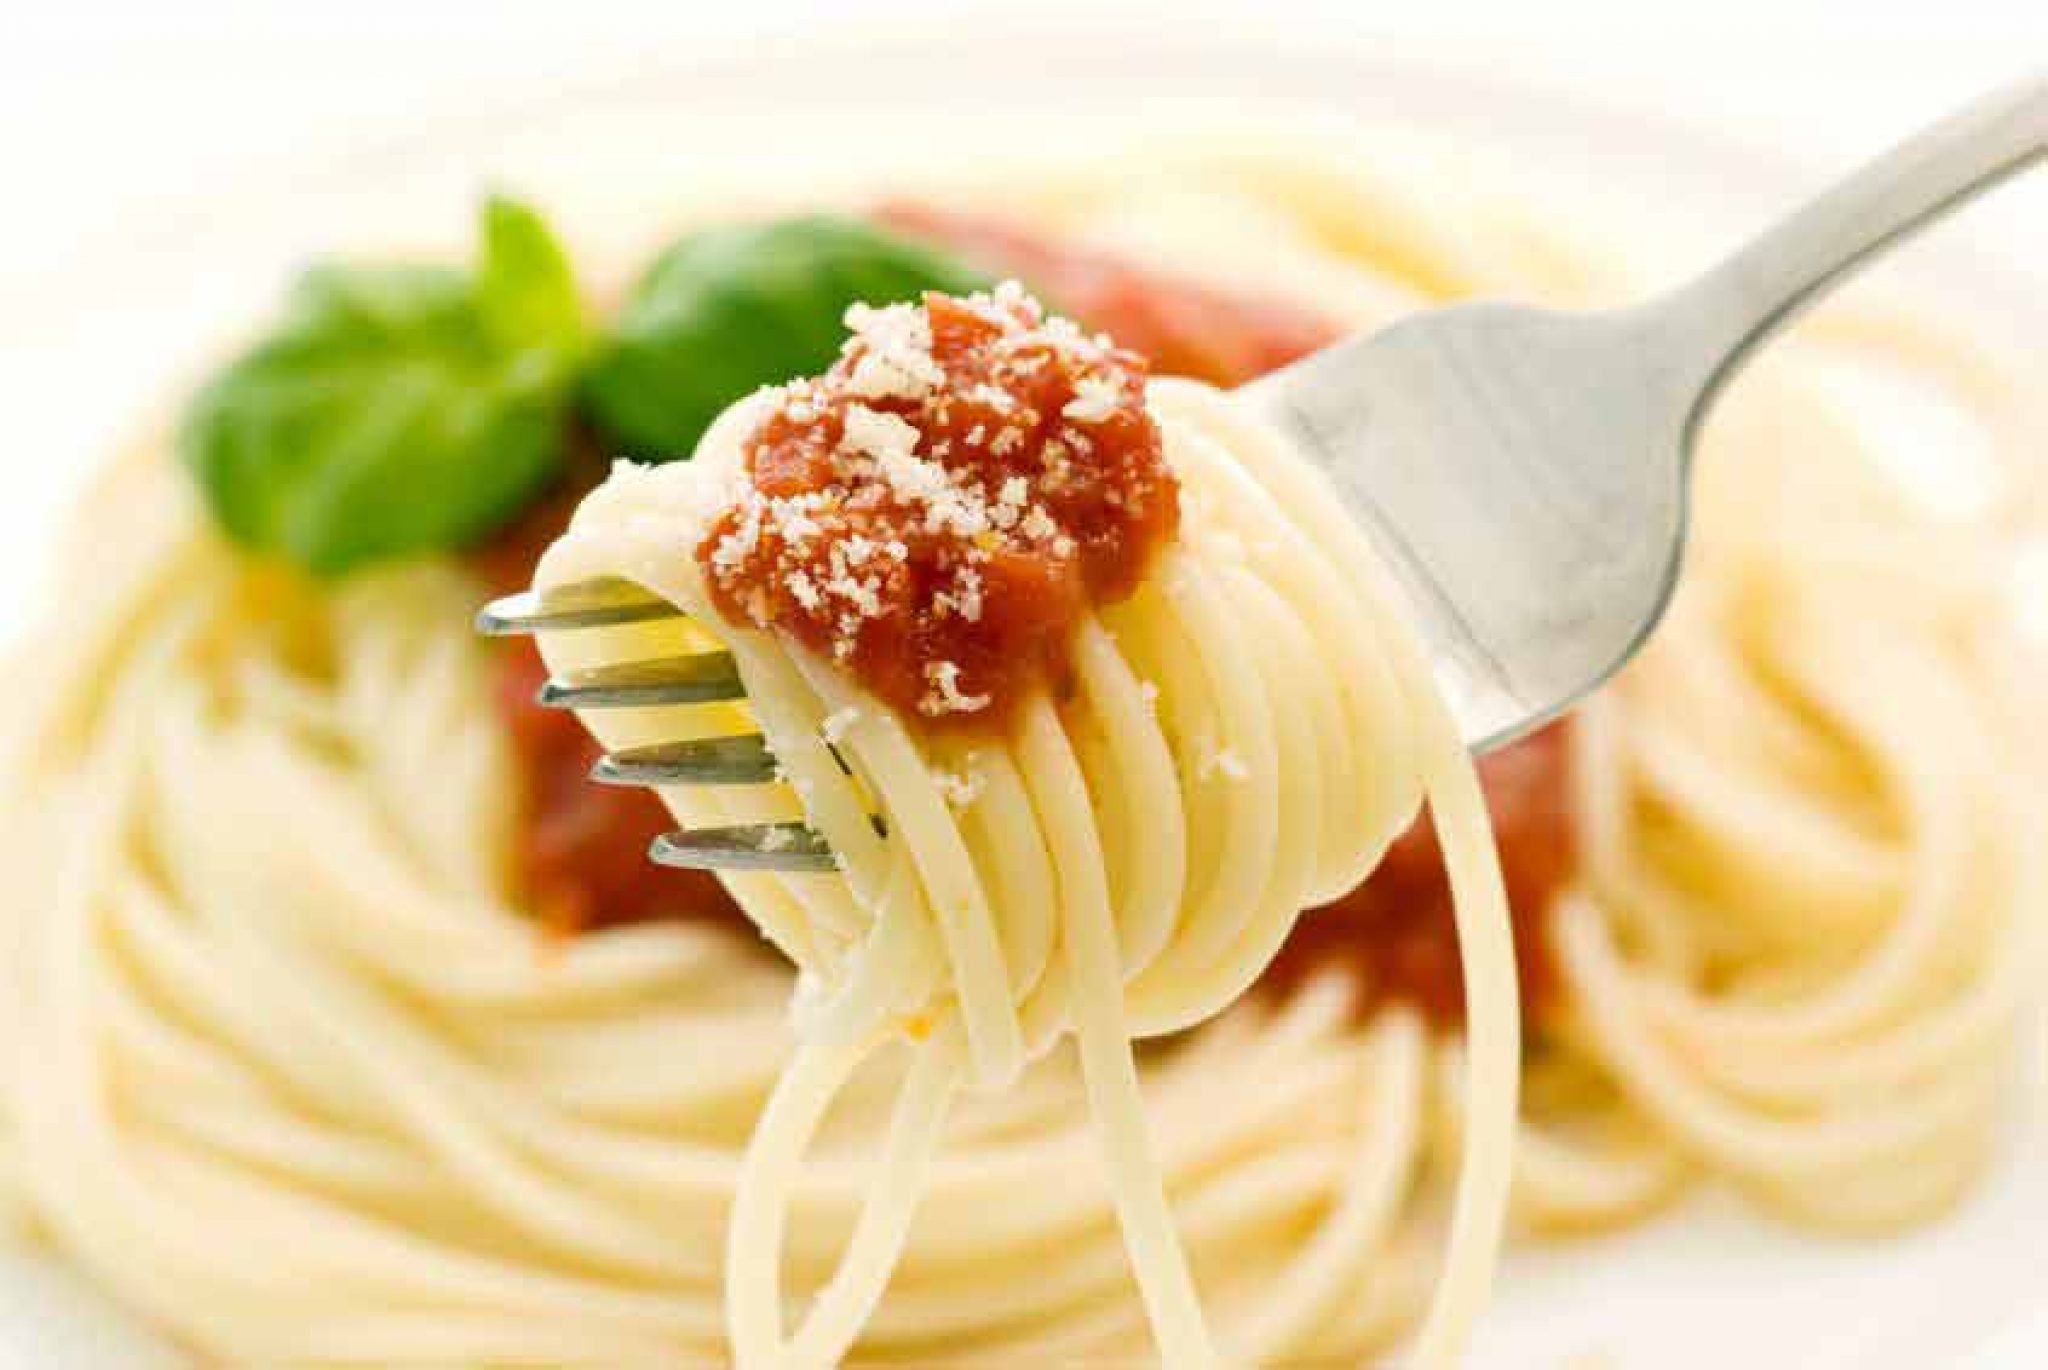 Parmesan: Was ist Parmigiano Reggiano? Infos und Tipps